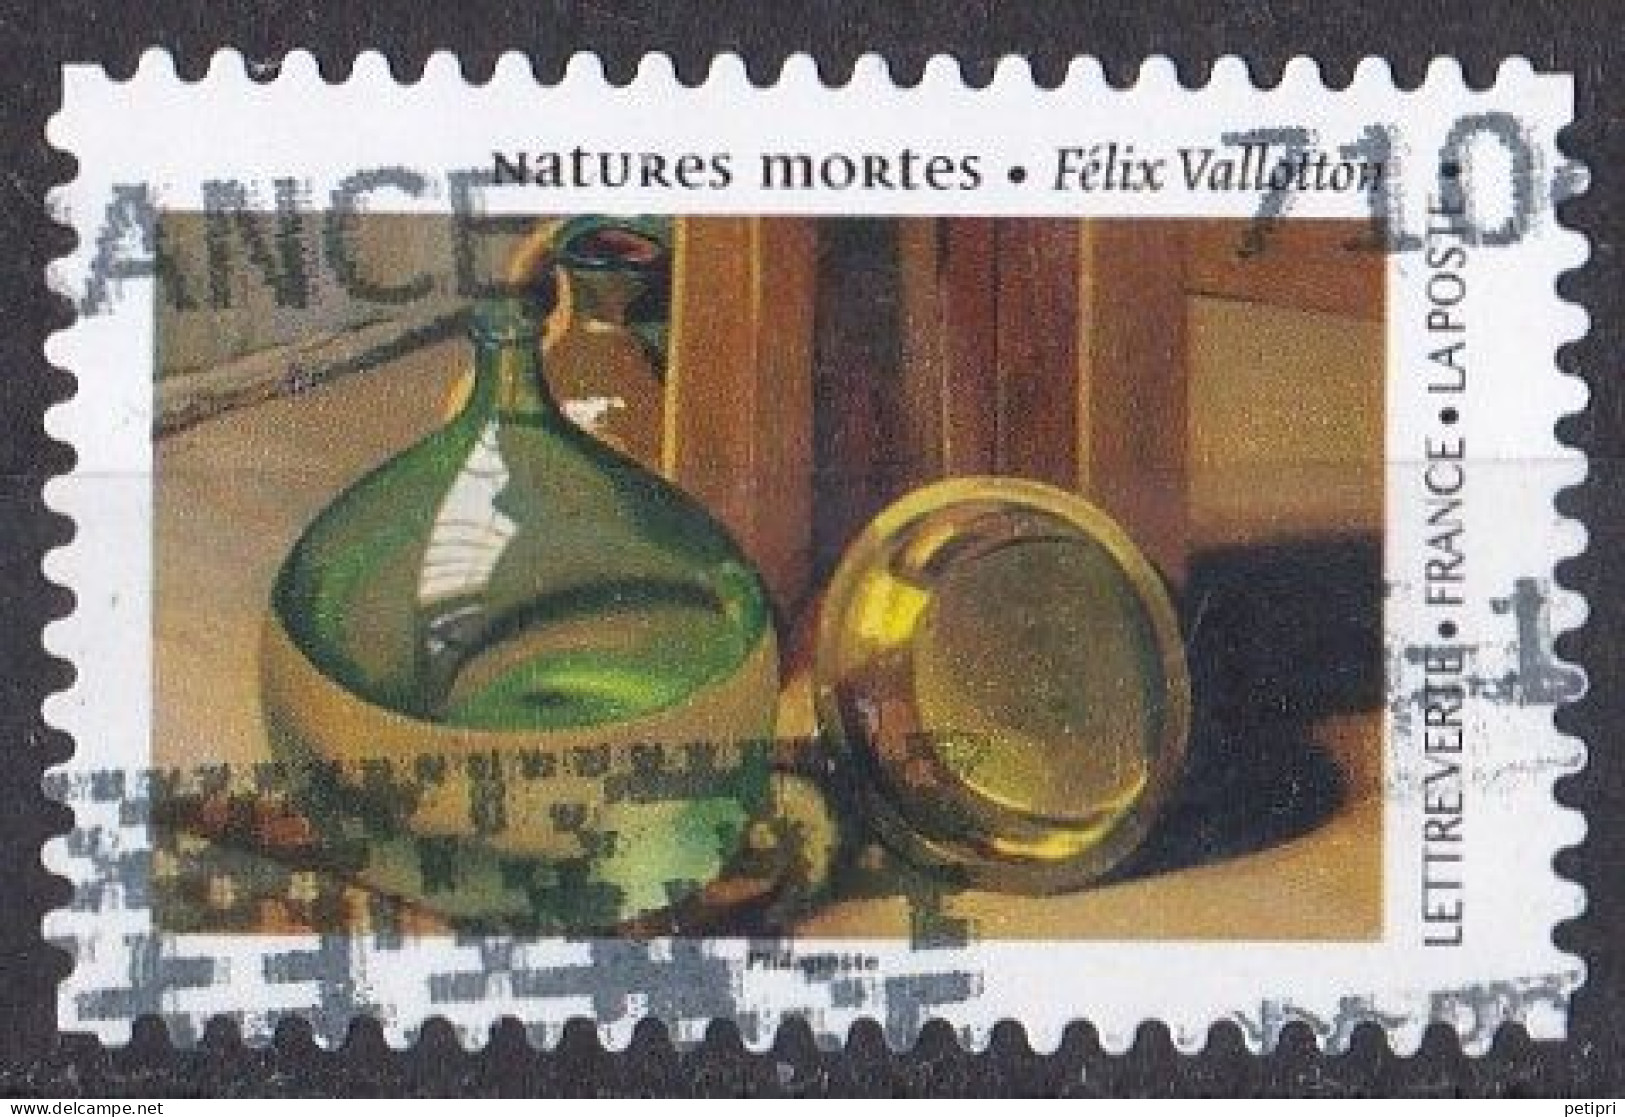 France -  Adhésifs  (autocollants )  Y&T N °  2341  Oblitéré - Used Stamps